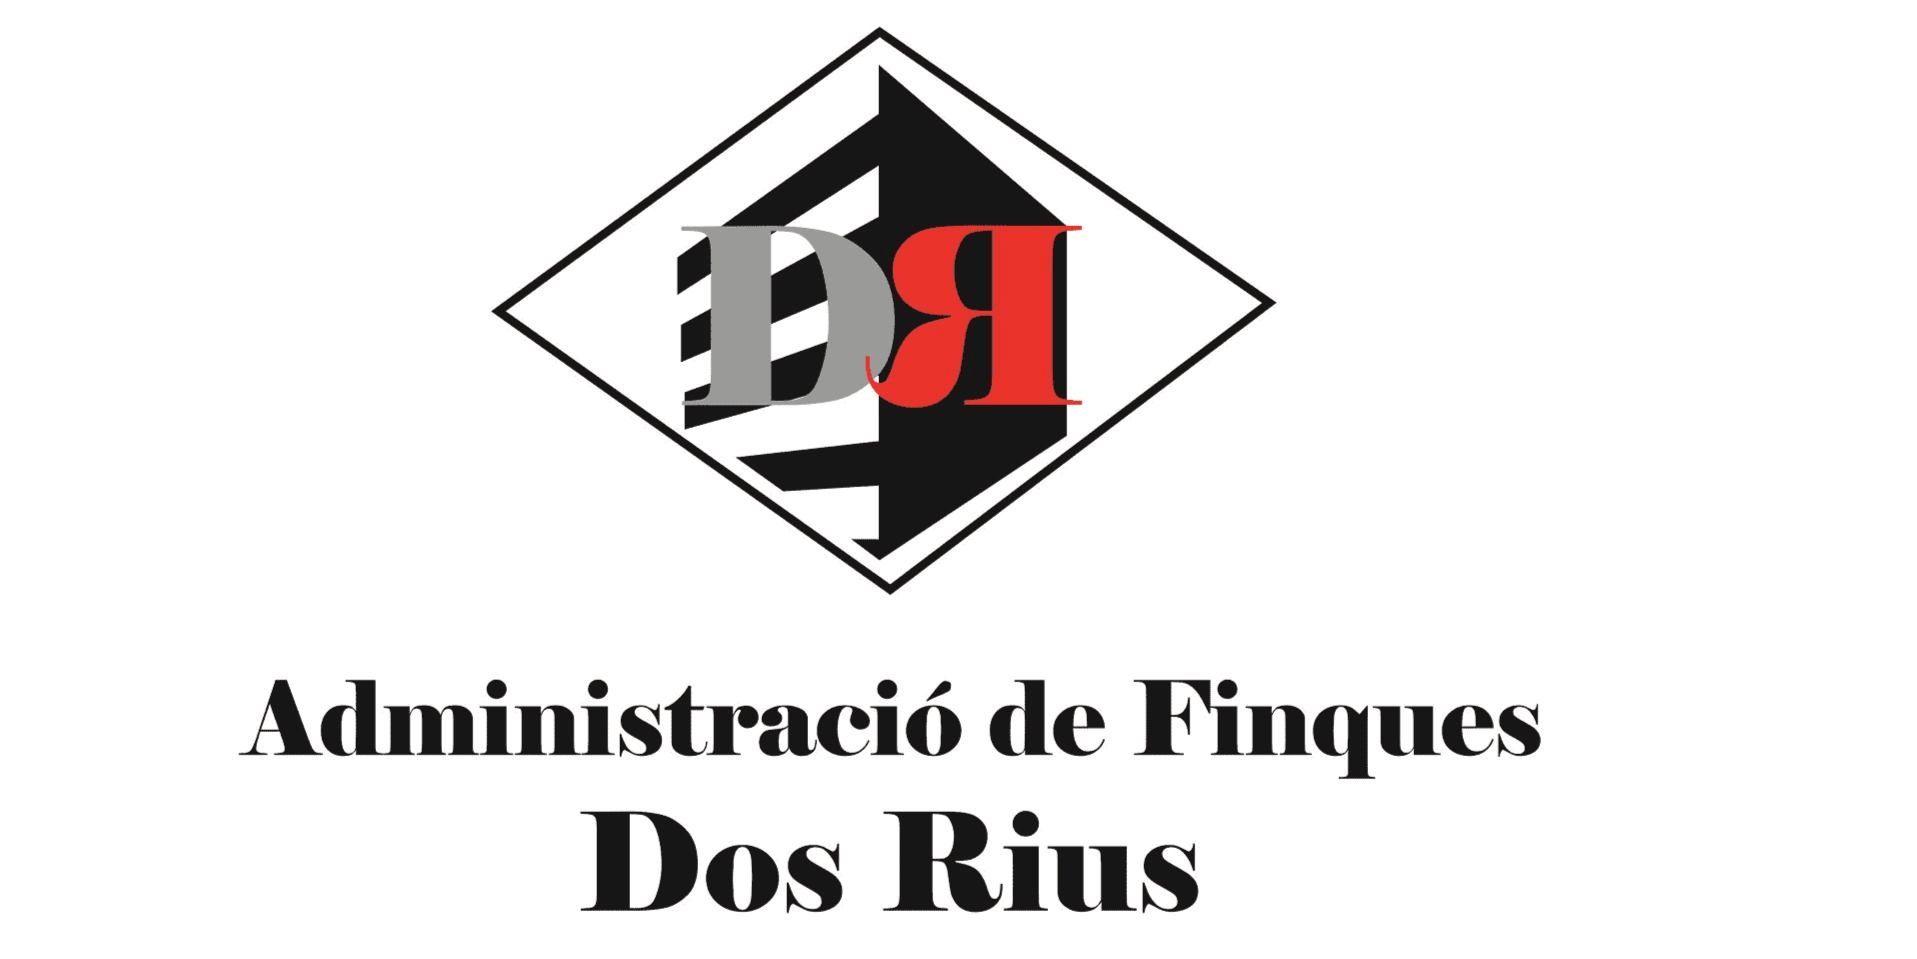 ADMINISTRACIO DE FINQUES DOS RIUS